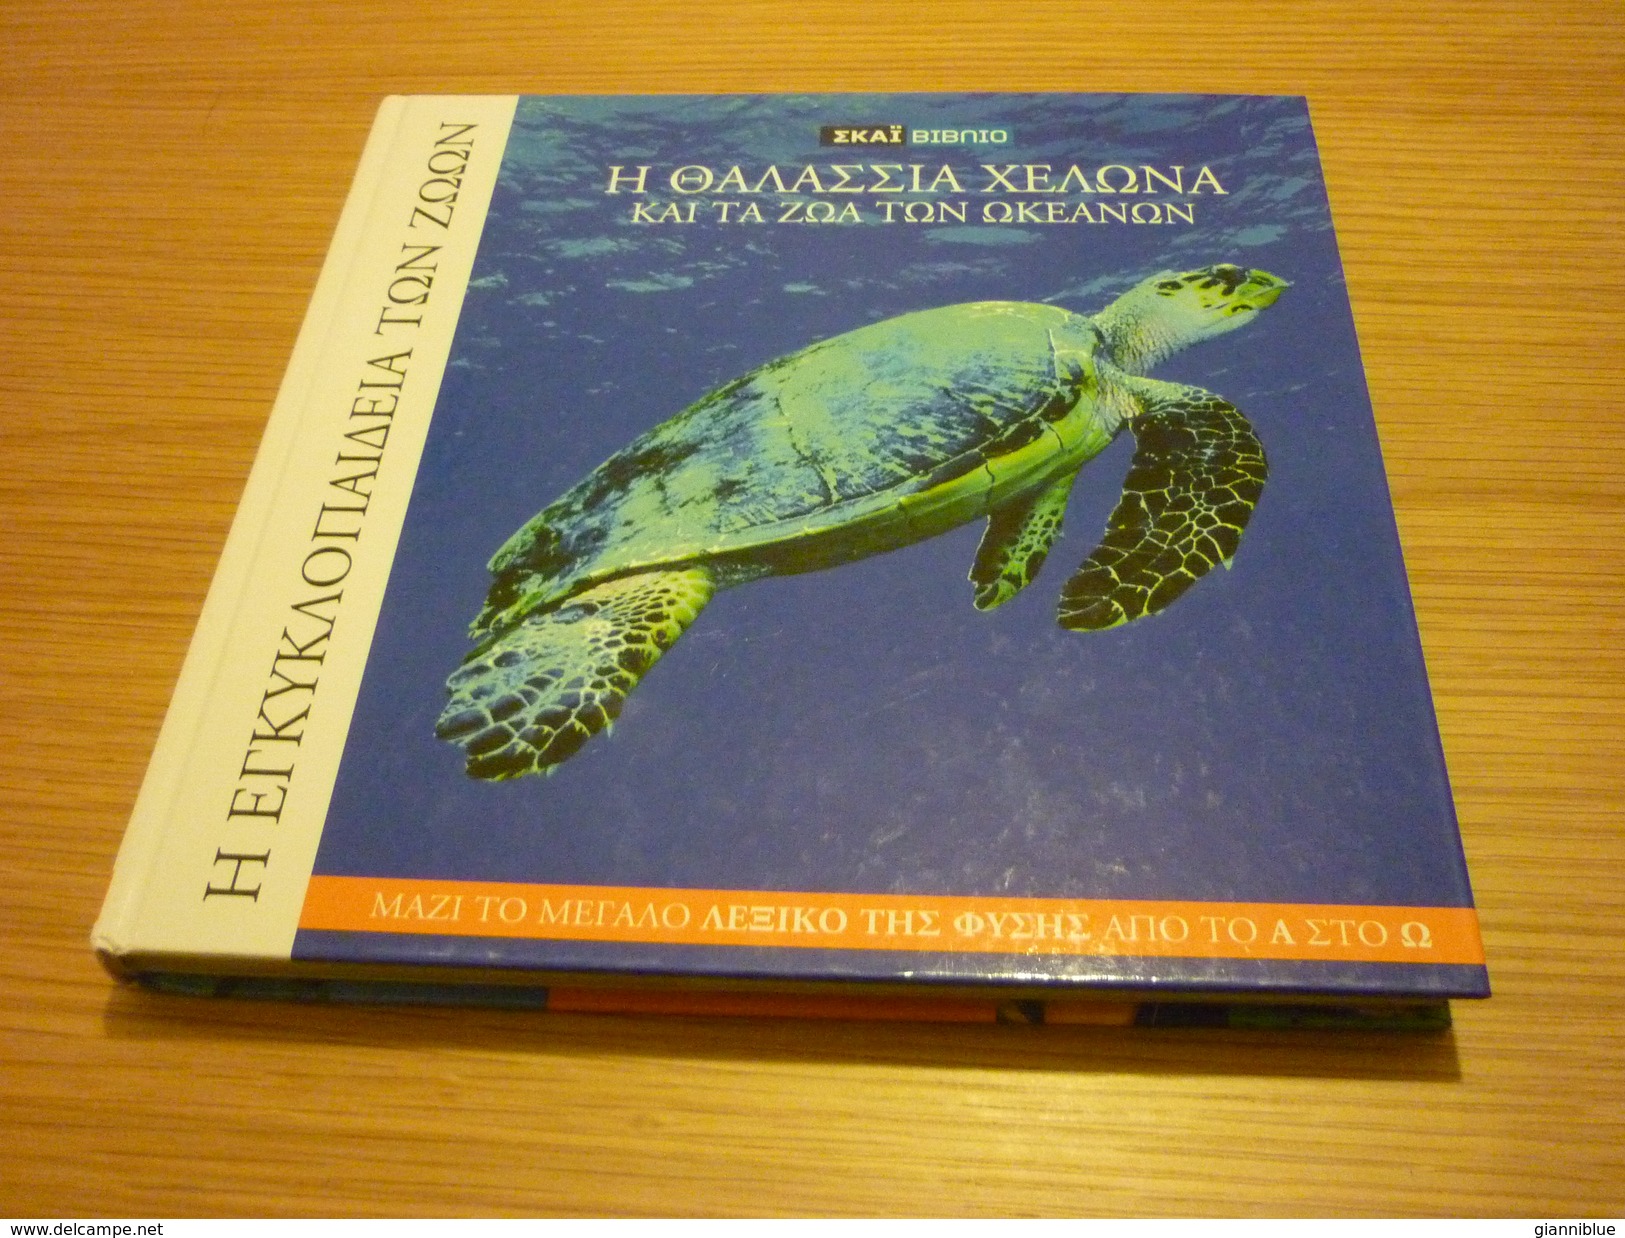 Sea Turtle & Sea Life Encyclopaedia Book Hard Cover - Enzyklopädien